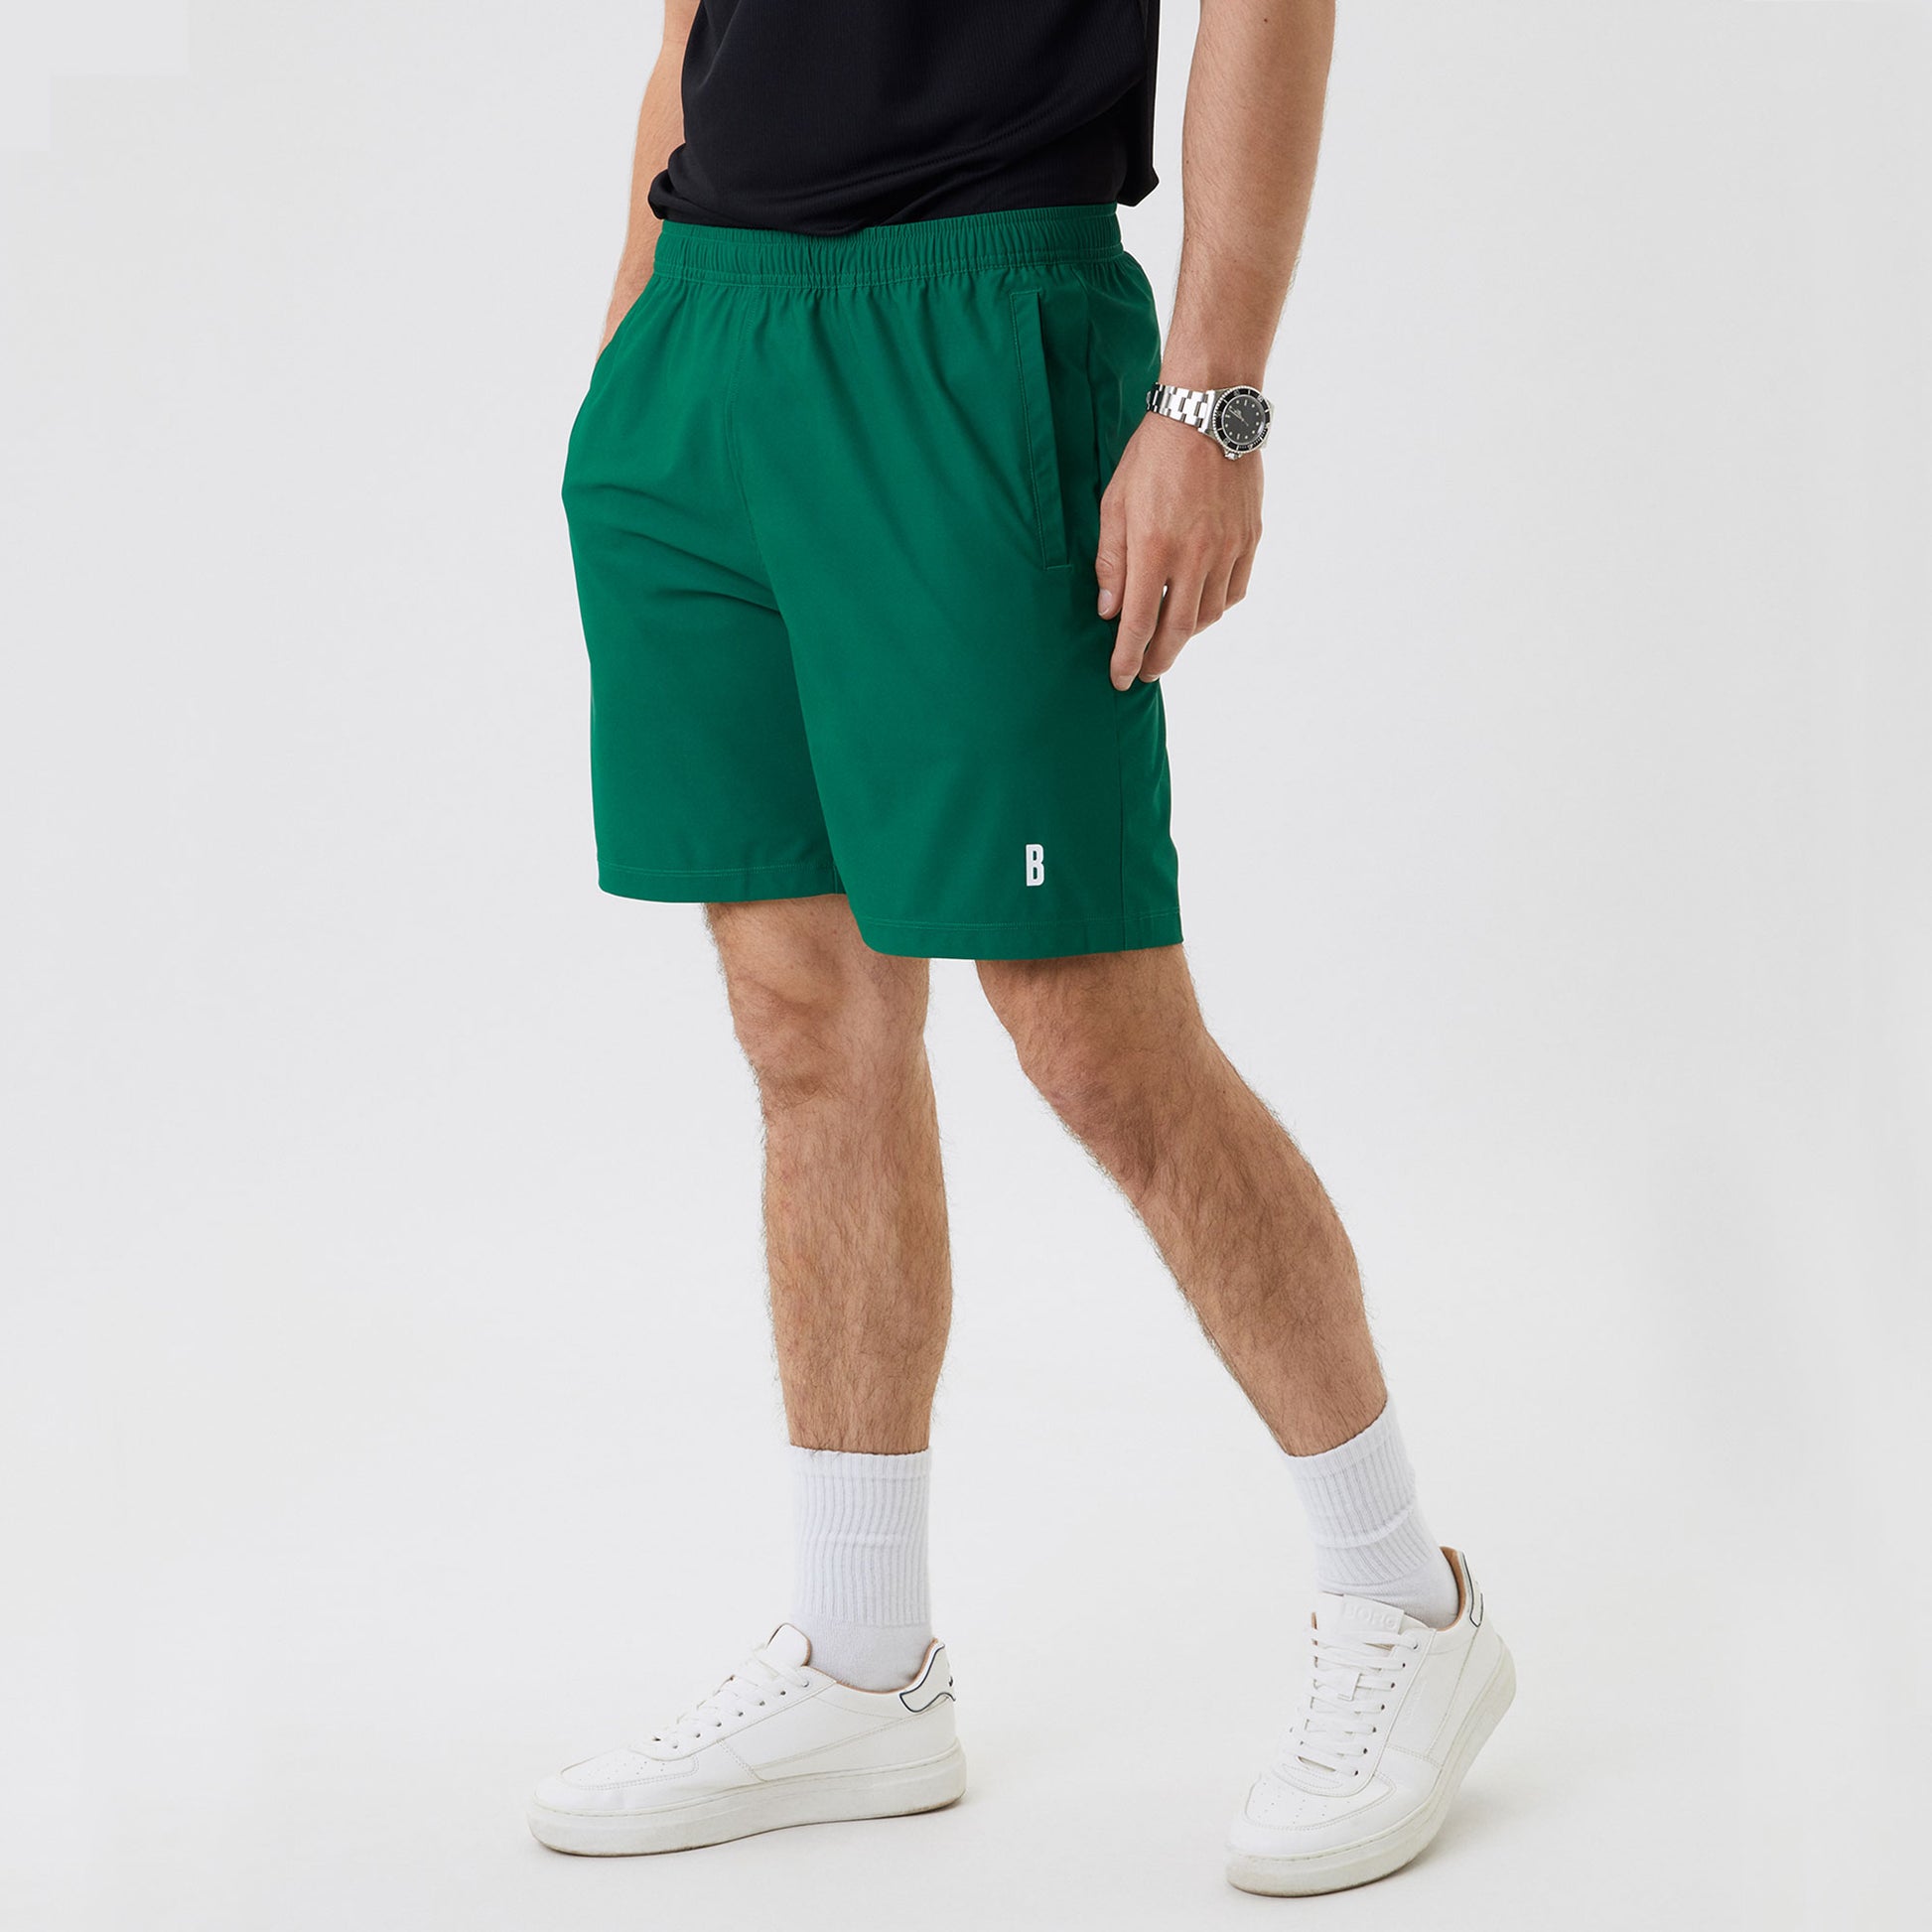 Björn Borg Ace Men's 9-Inch Tennis Shorts Green (1)